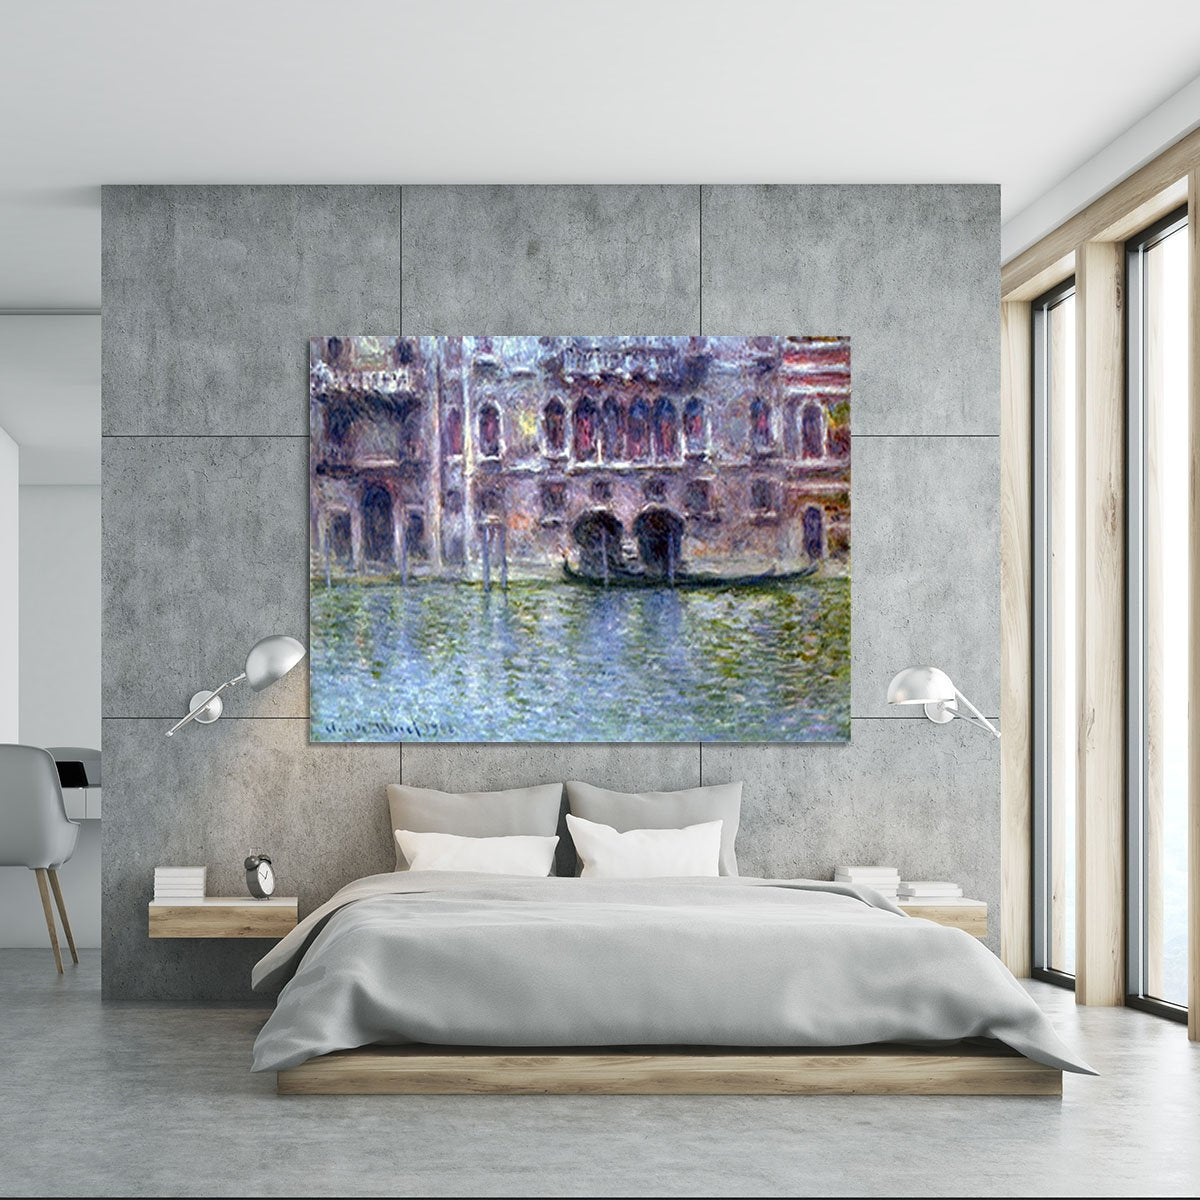 Palazzo da Mula Venice by Monet Canvas Print or Poster